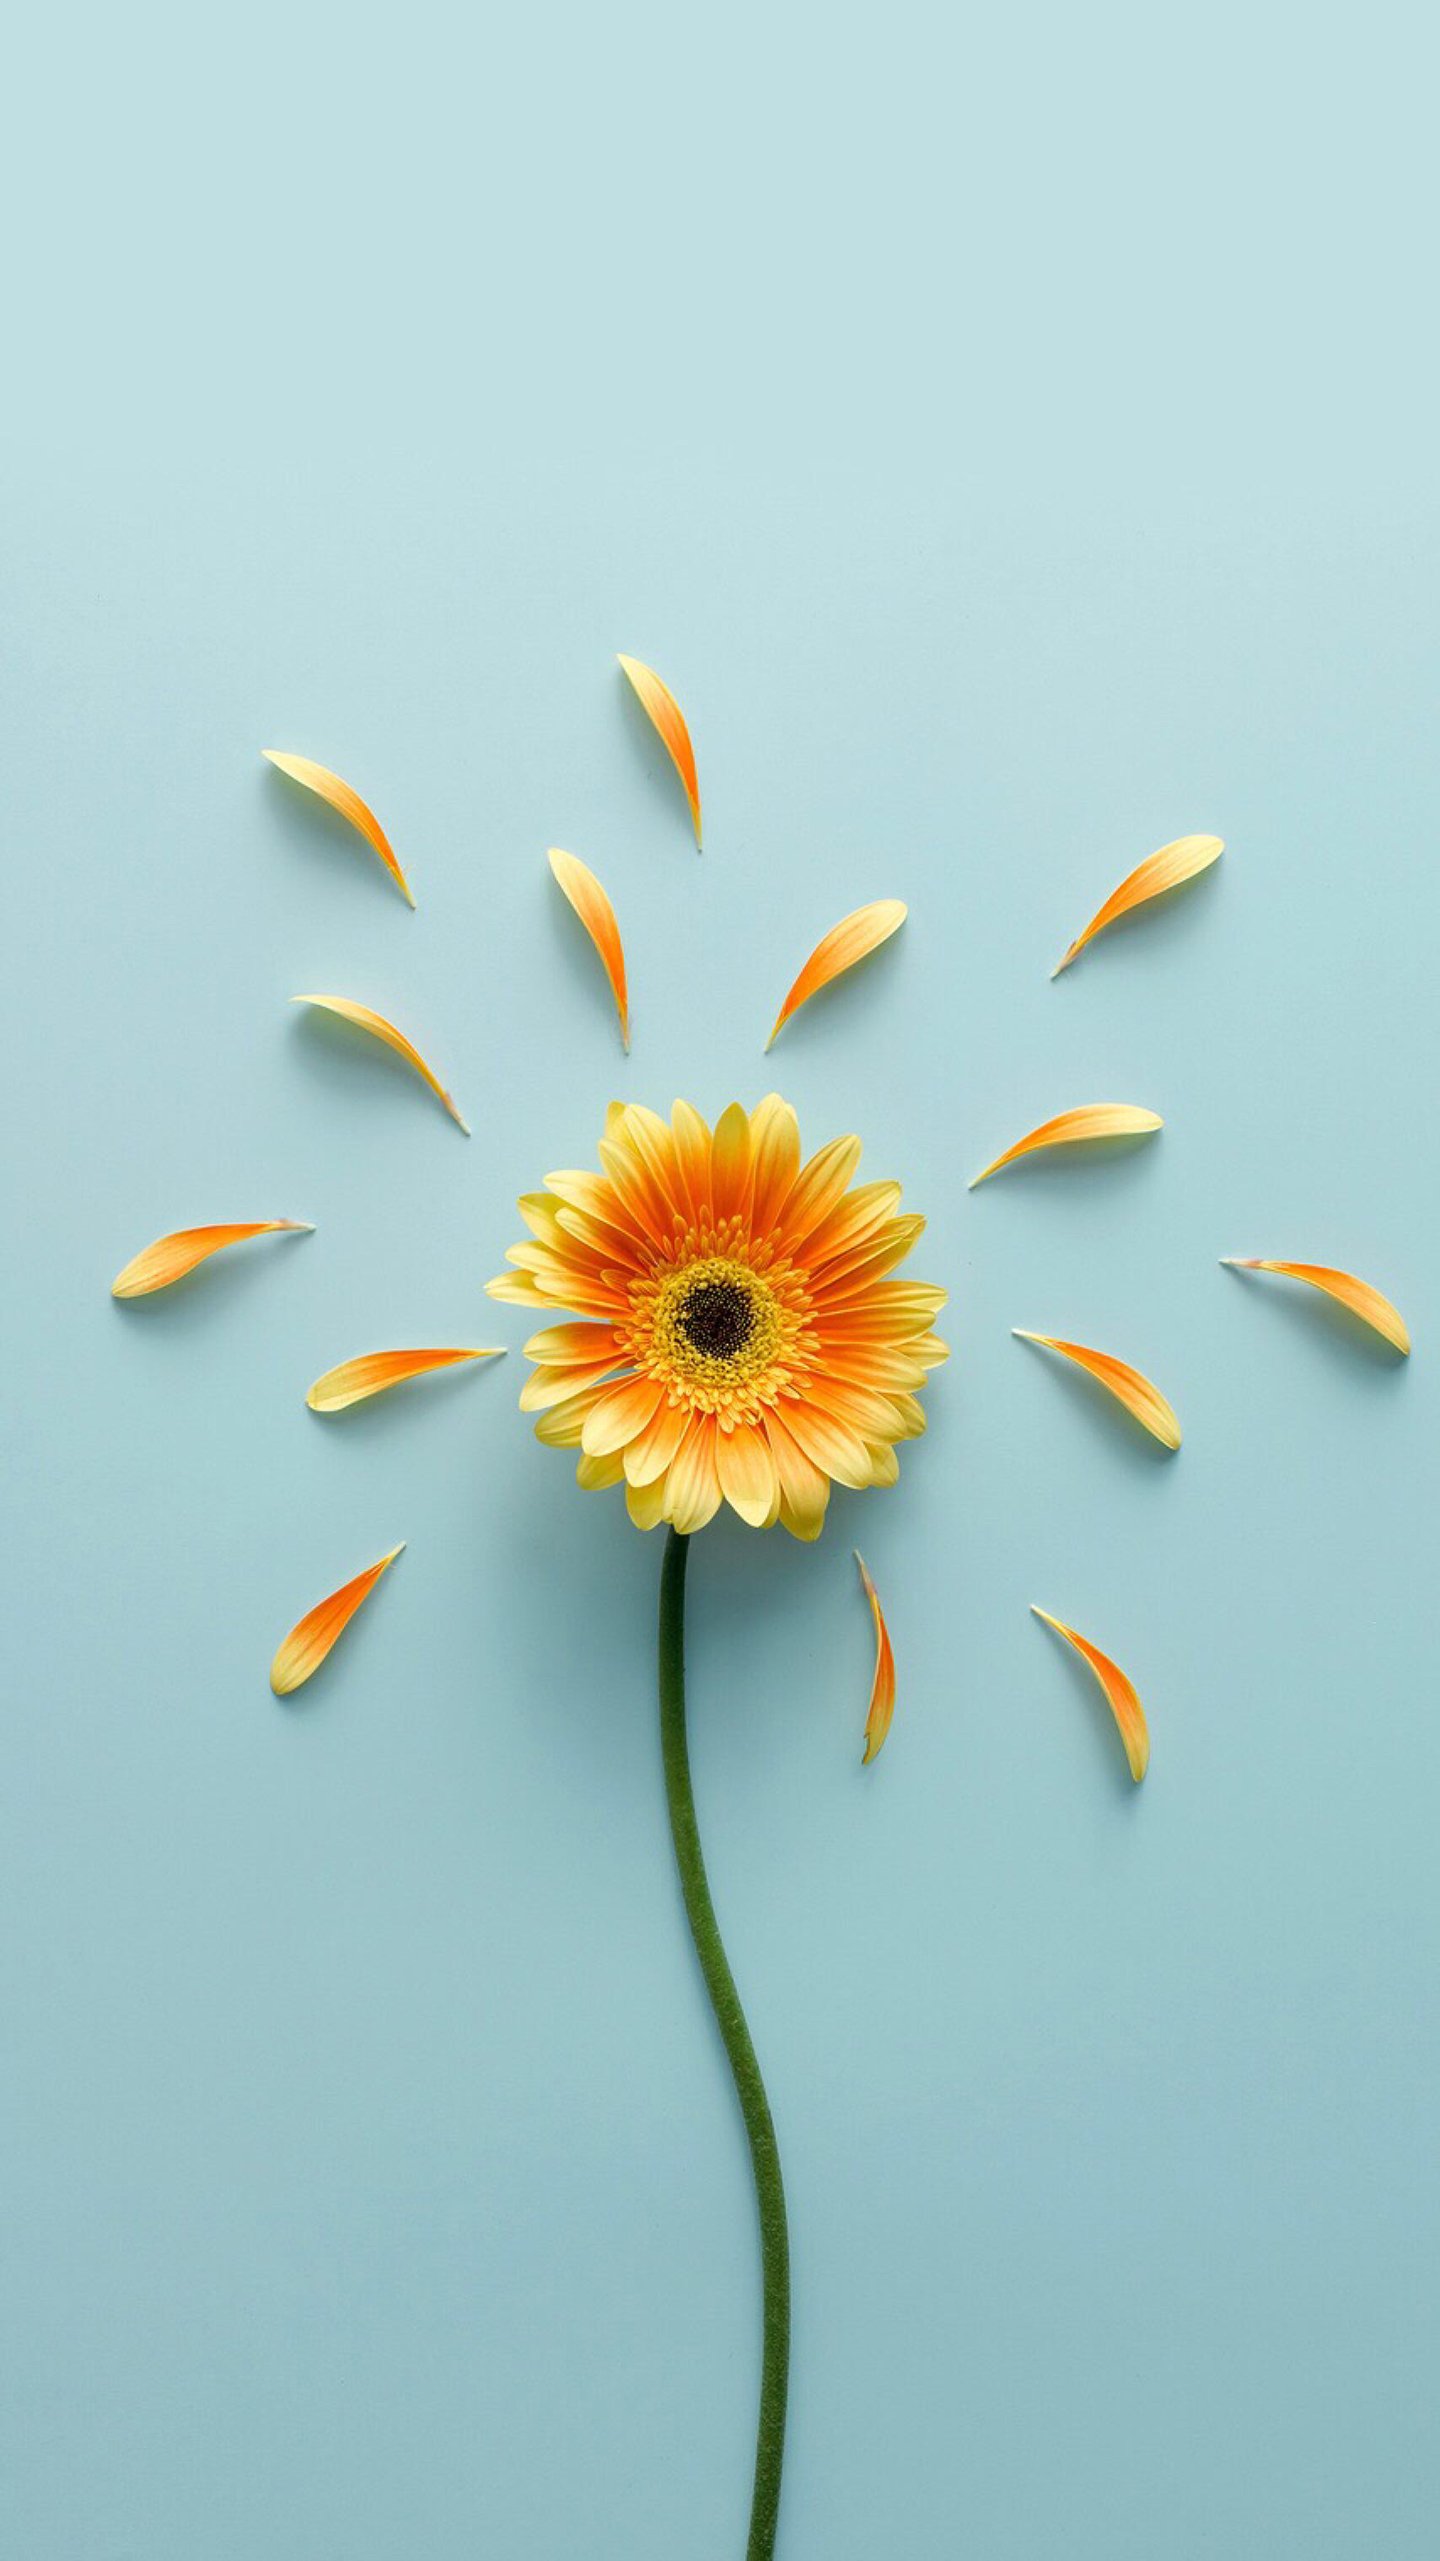 good morning wallpaper,sunflower,flower,yellow,gerbera,text